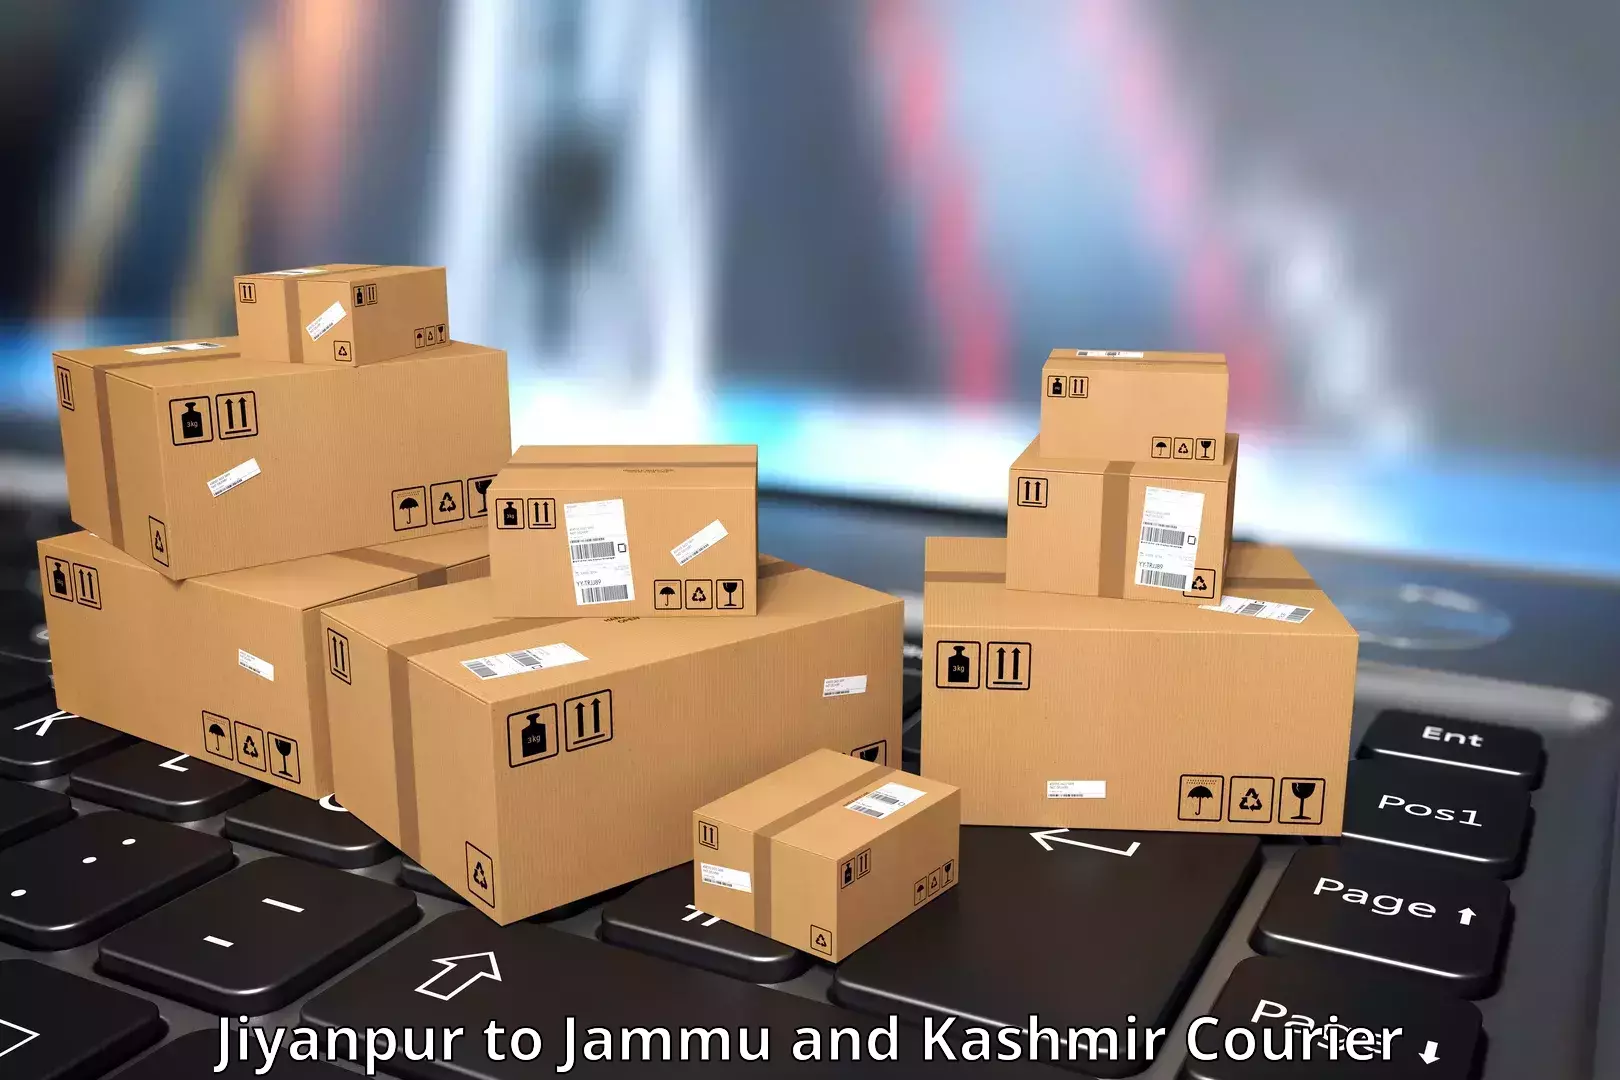 Express package handling Jiyanpur to Parsa